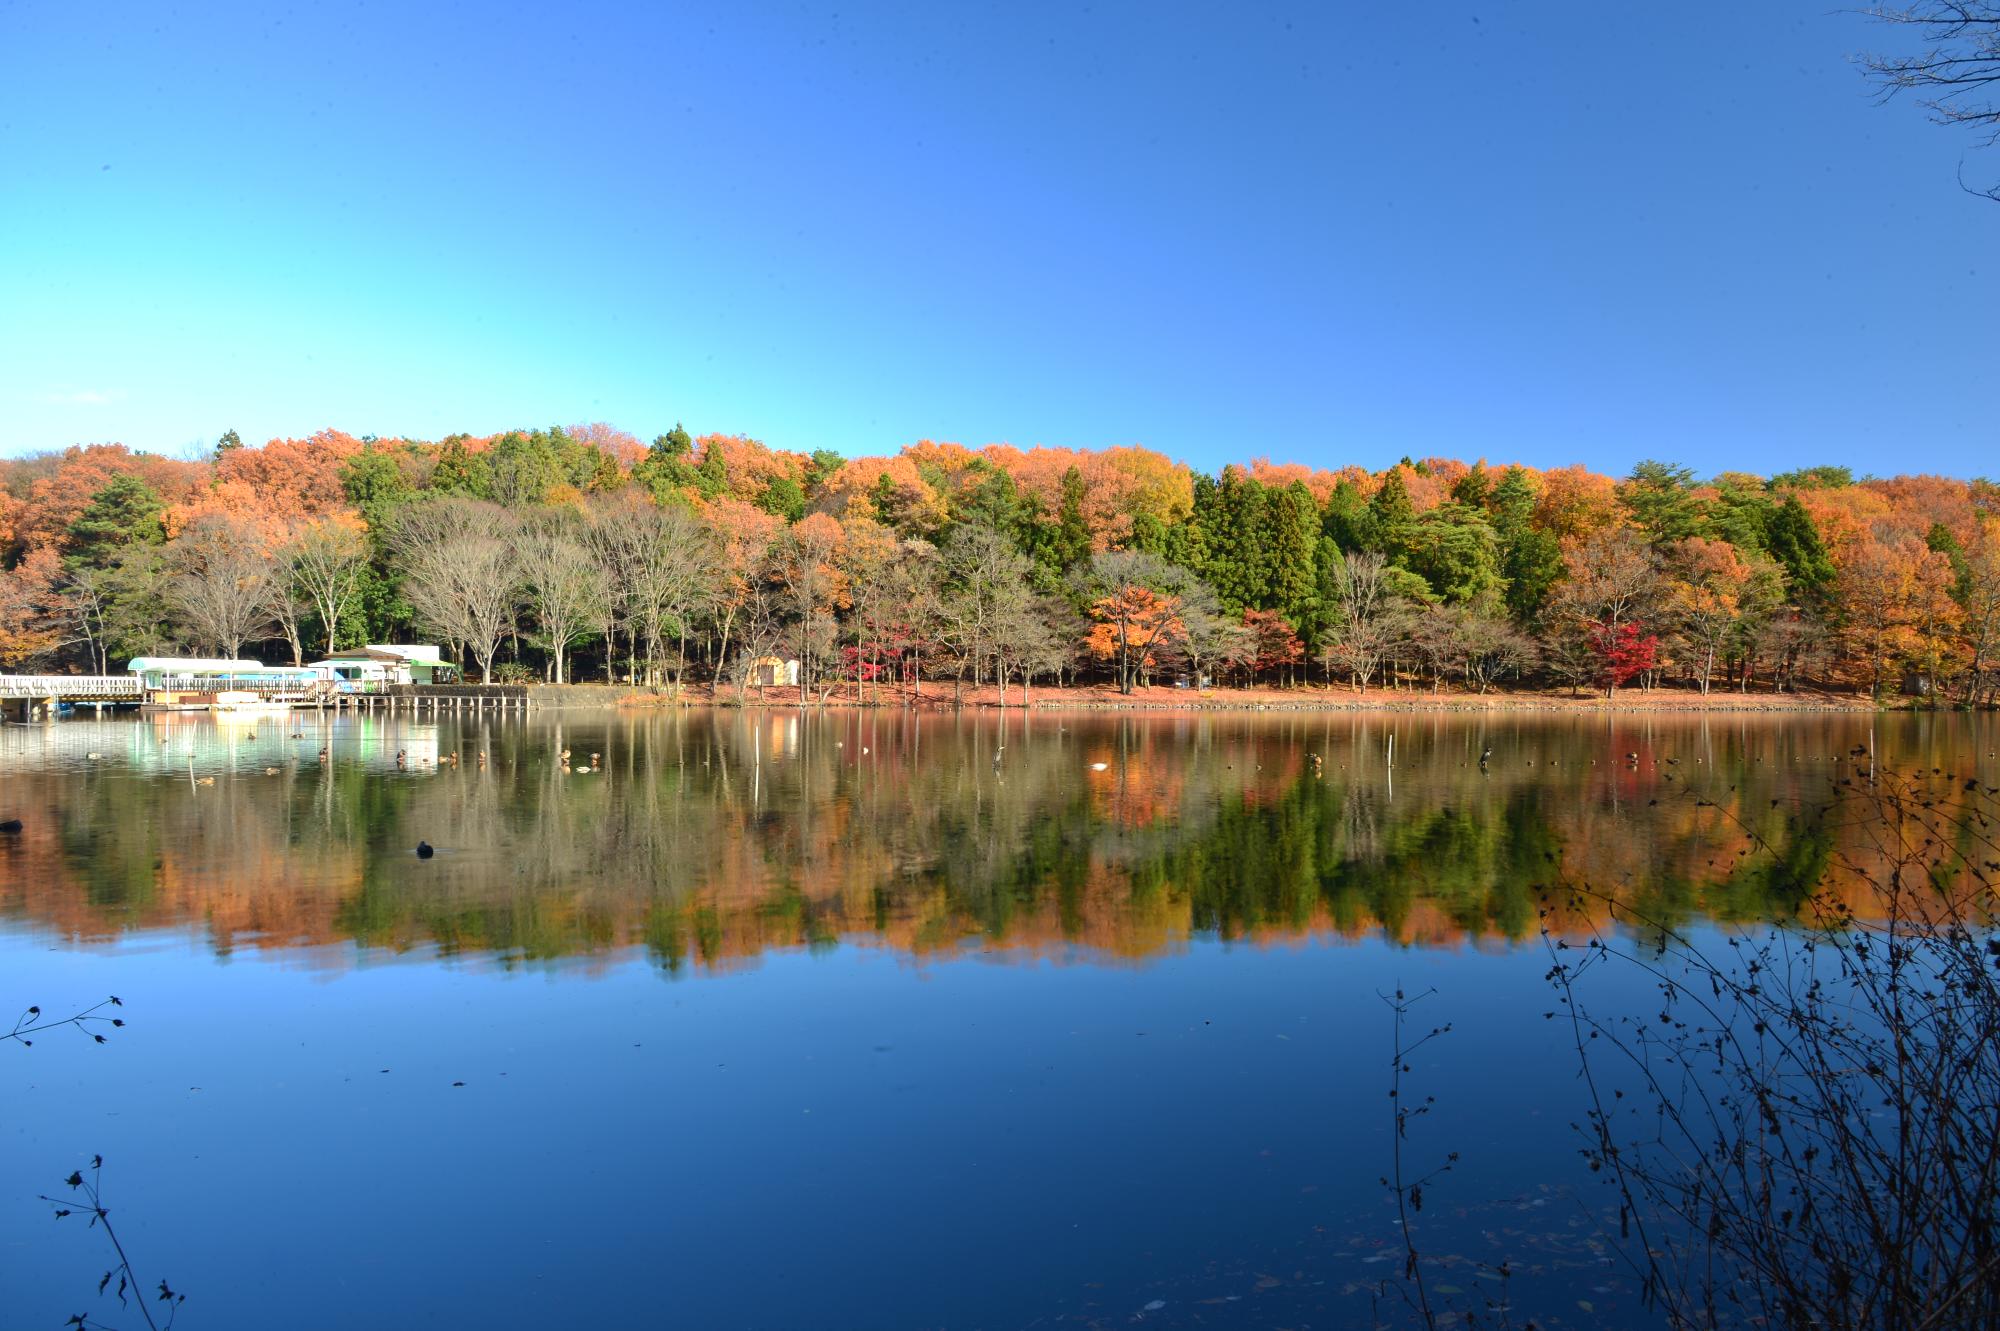 湖の奥に紅葉で赤や緑に染まっている風景が水面にも映っている風景を写した写真